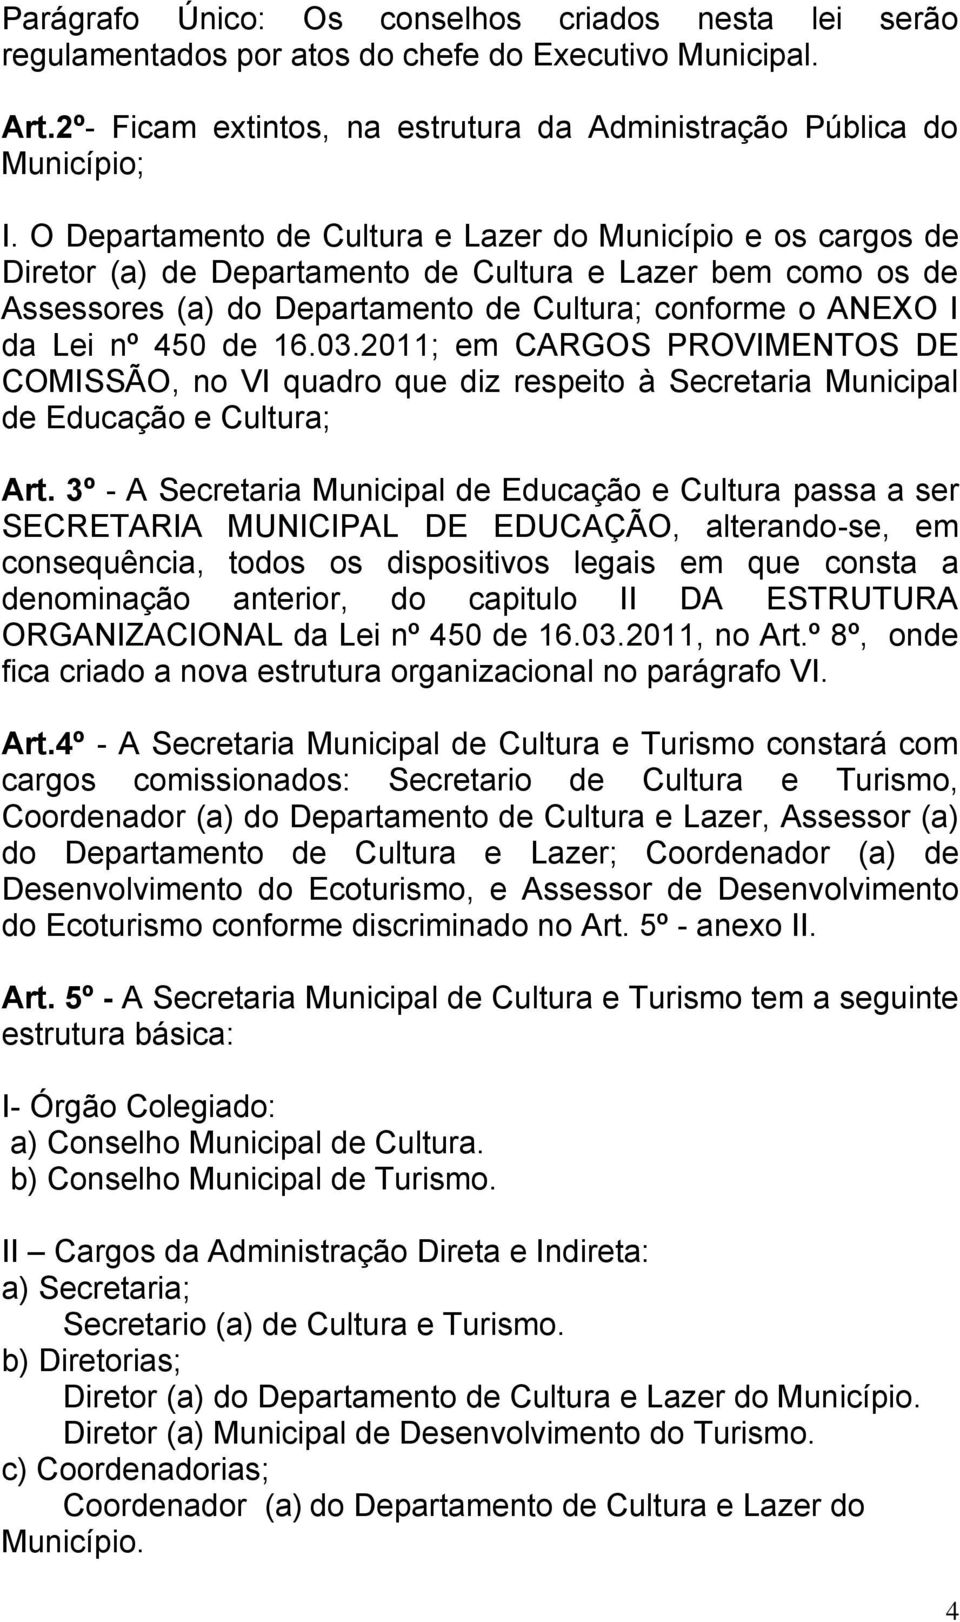 de 16.03.2011; em CARGOS PROVIMENTOS DE COMISSÃO, no VI quadro que diz respeito à Secretaria Municipal de Educação e Cultura; Art.